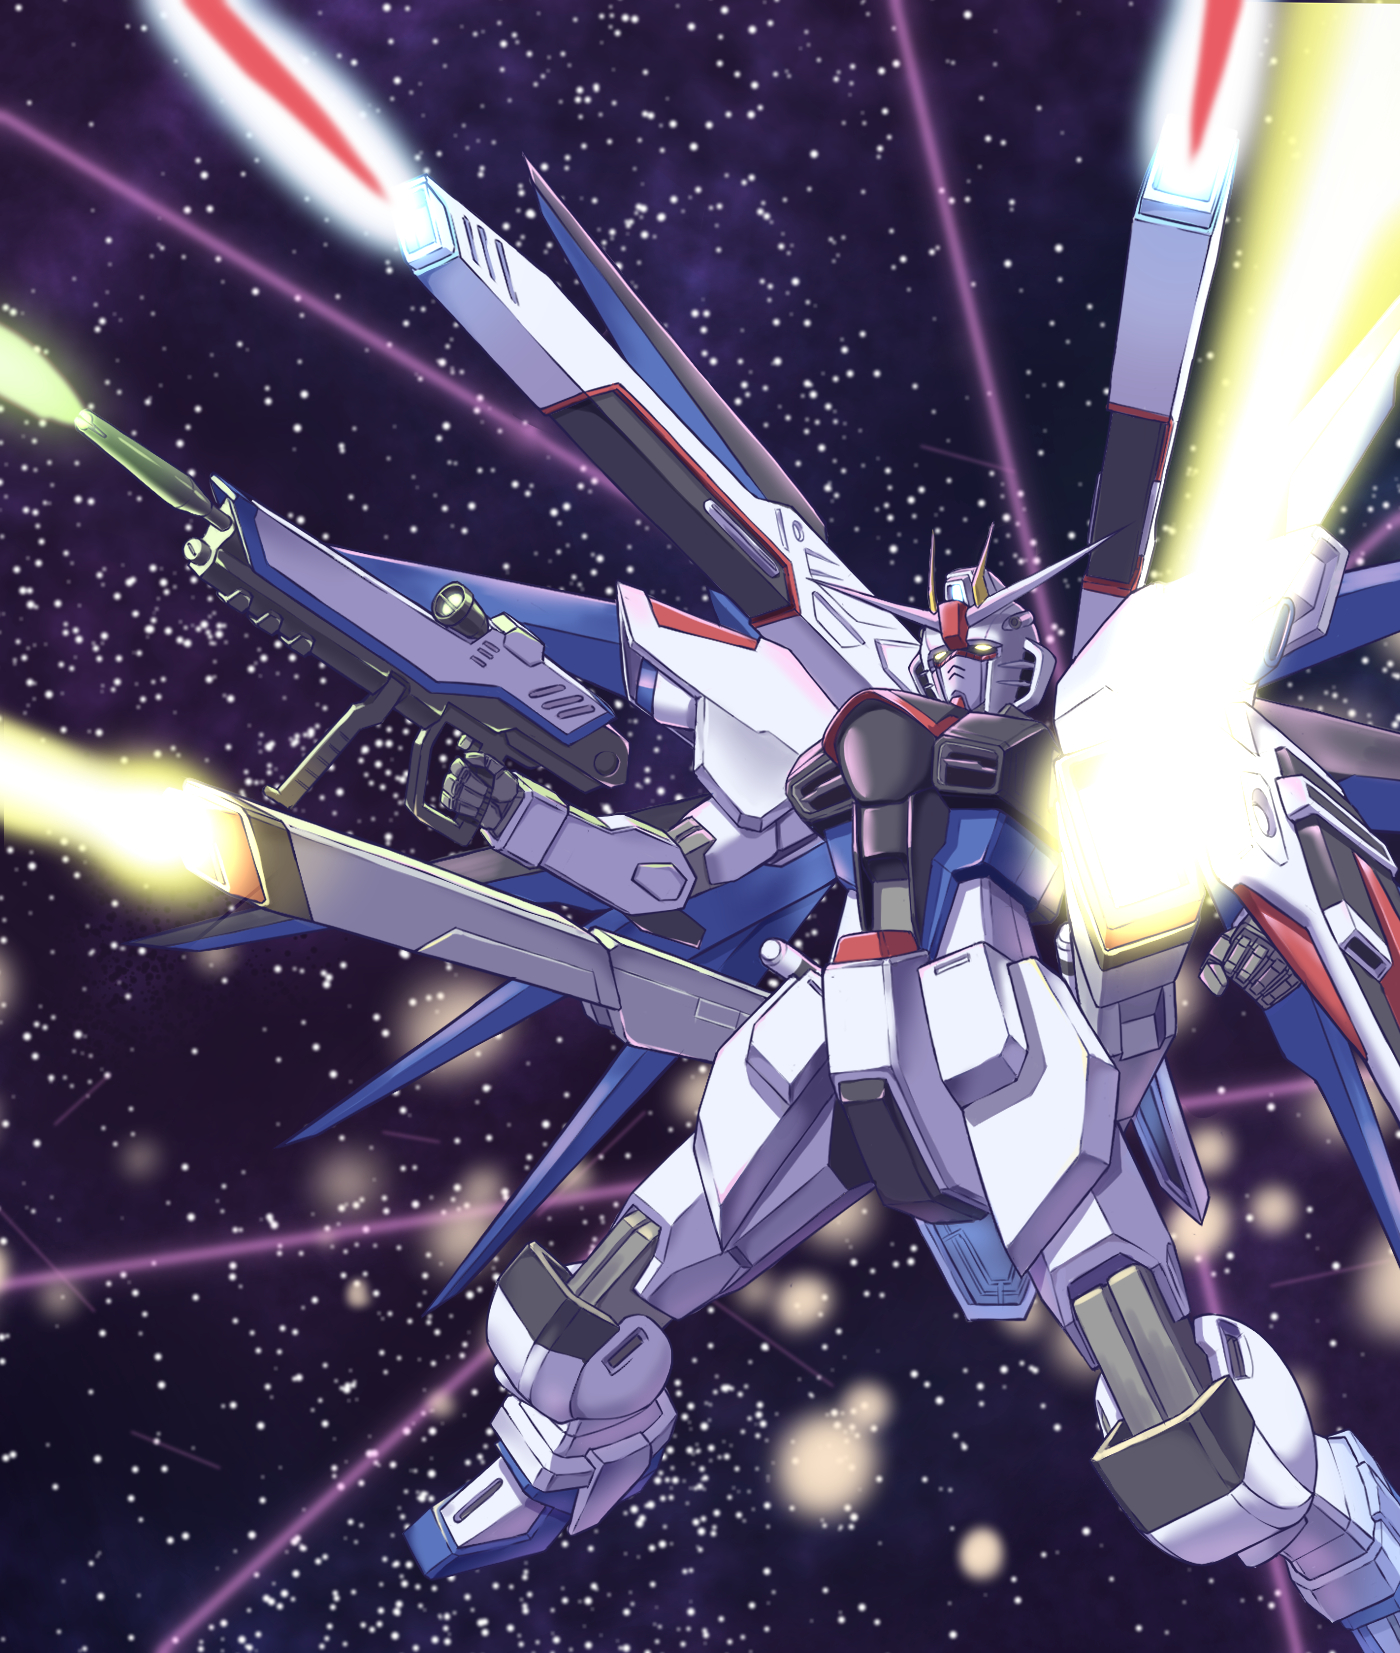 Anime Mechs Gundam Super Robot Wars Mobile Suit Gundam SEED Freedom Gundam Artwork Digital Art Fan A 1400x1653